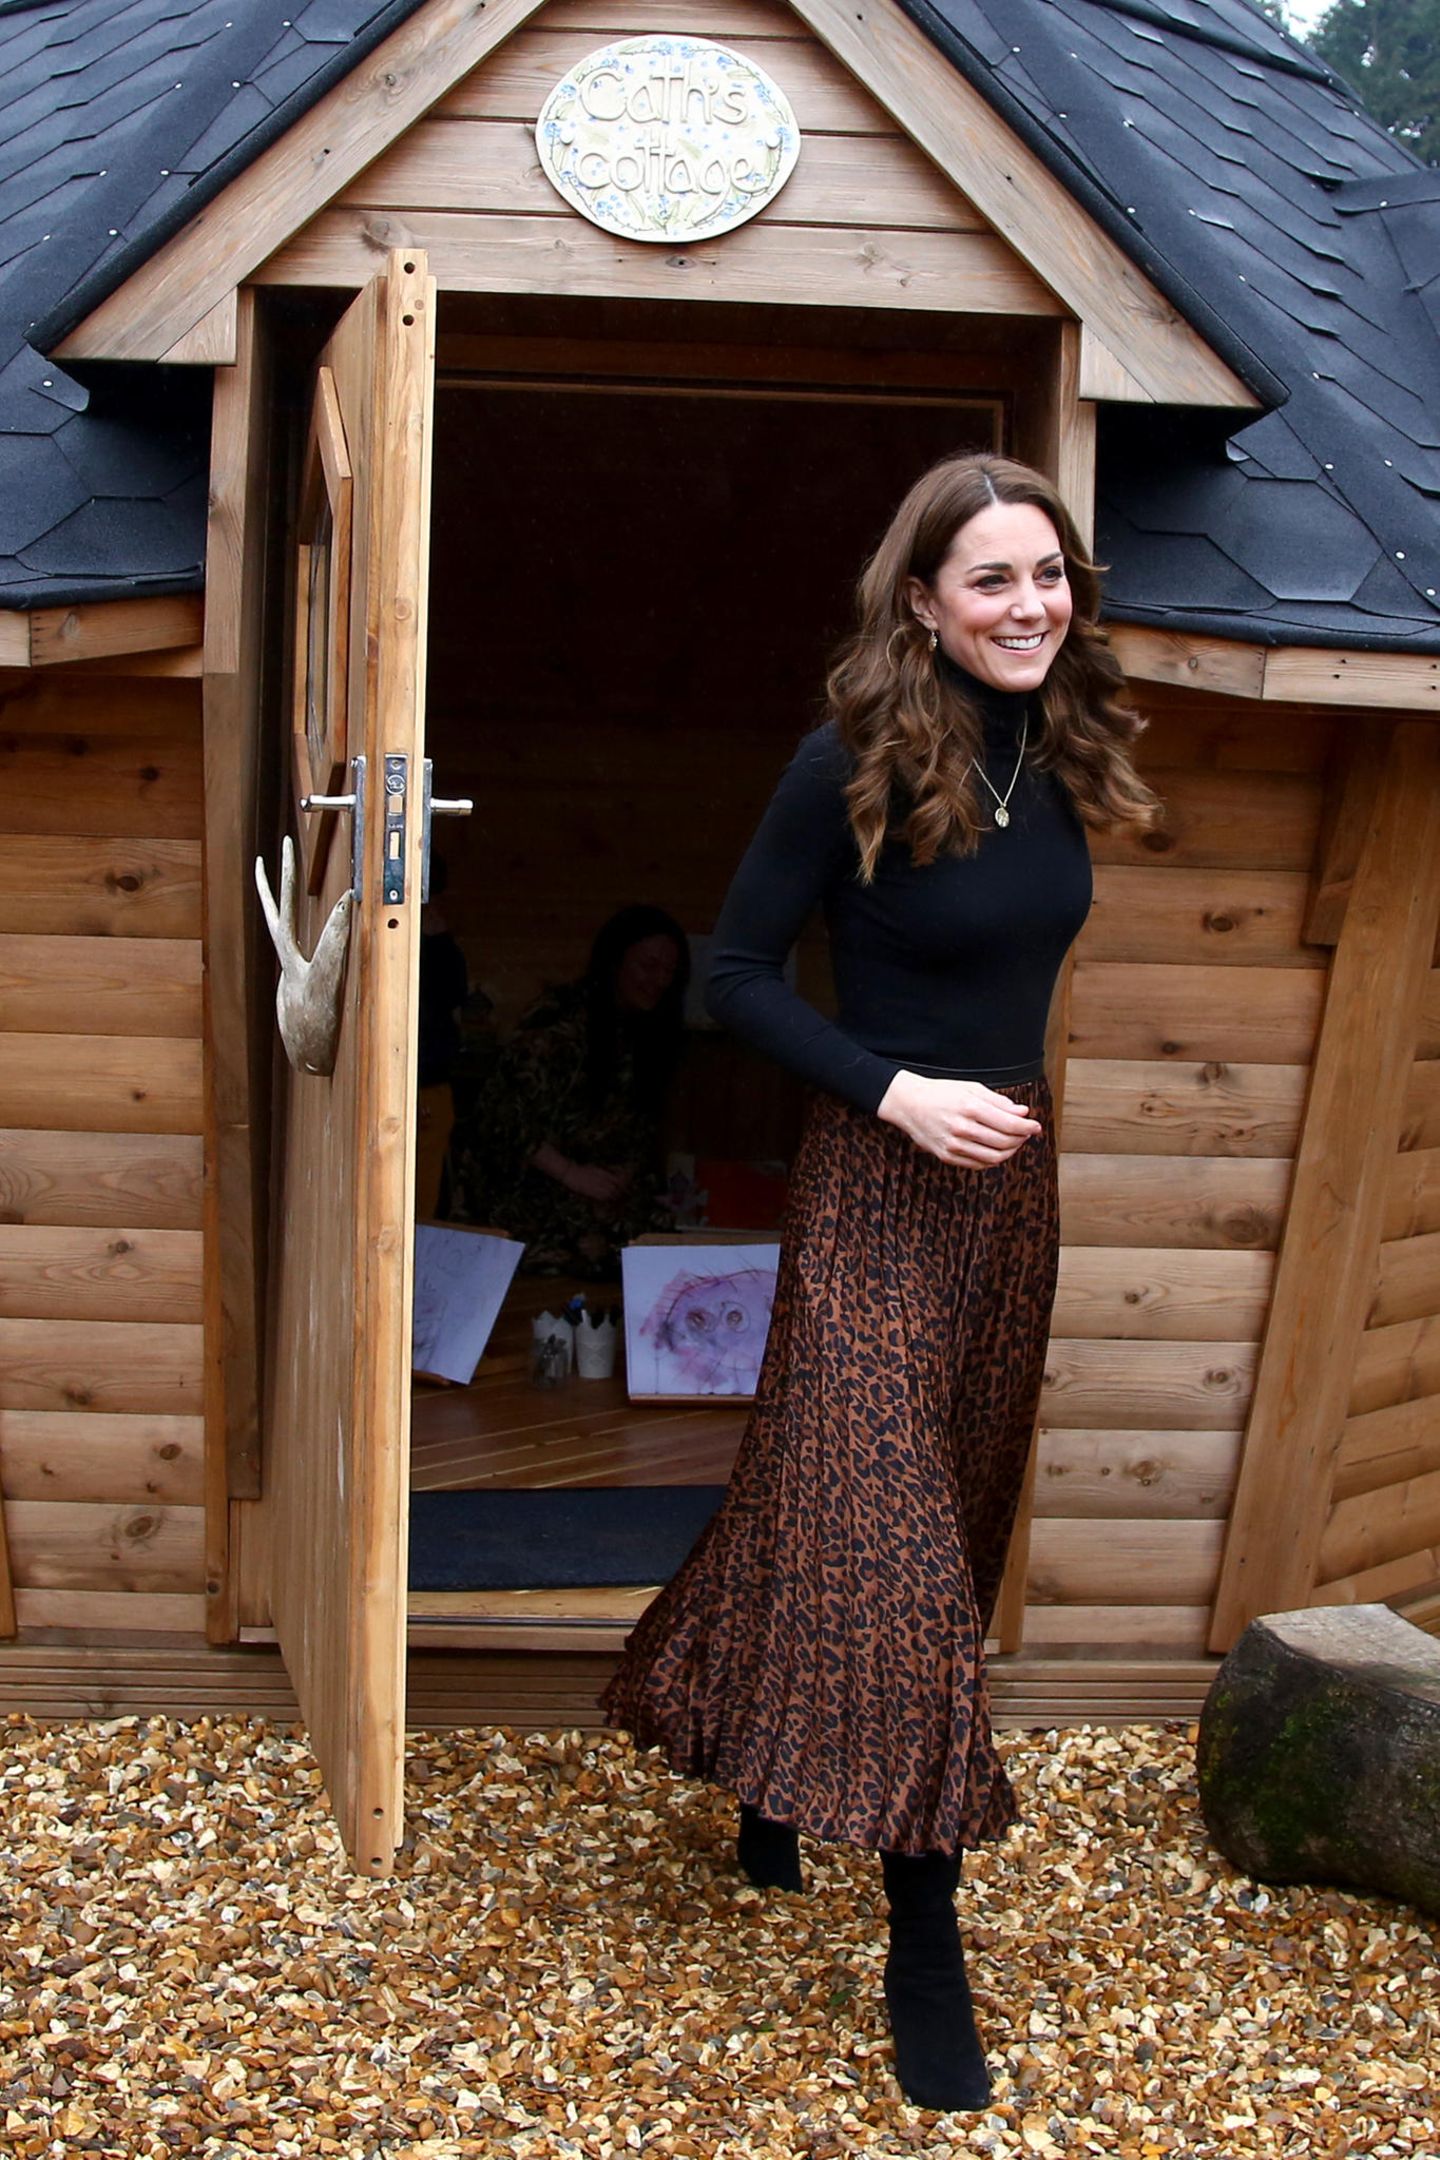 Royals, die günstige Kleidung tragen: Kate Middleton im Zara Rock